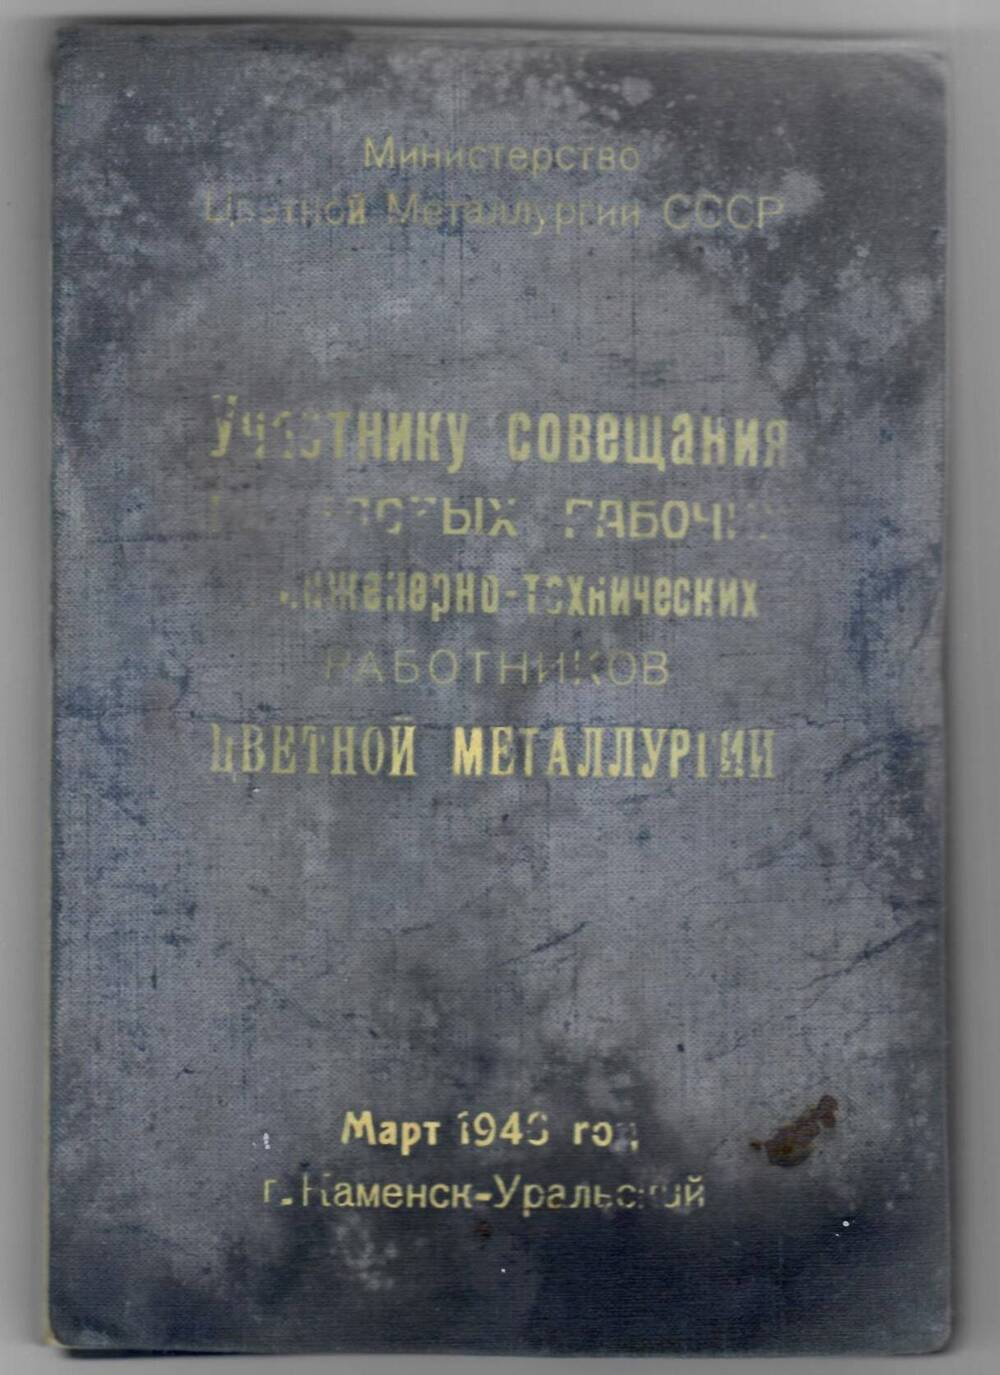 Записная книжка Участнику совещания передовых рабочих, ИТР Цветной металлургии, март, 1946 г. Жамилова Н.Ж.